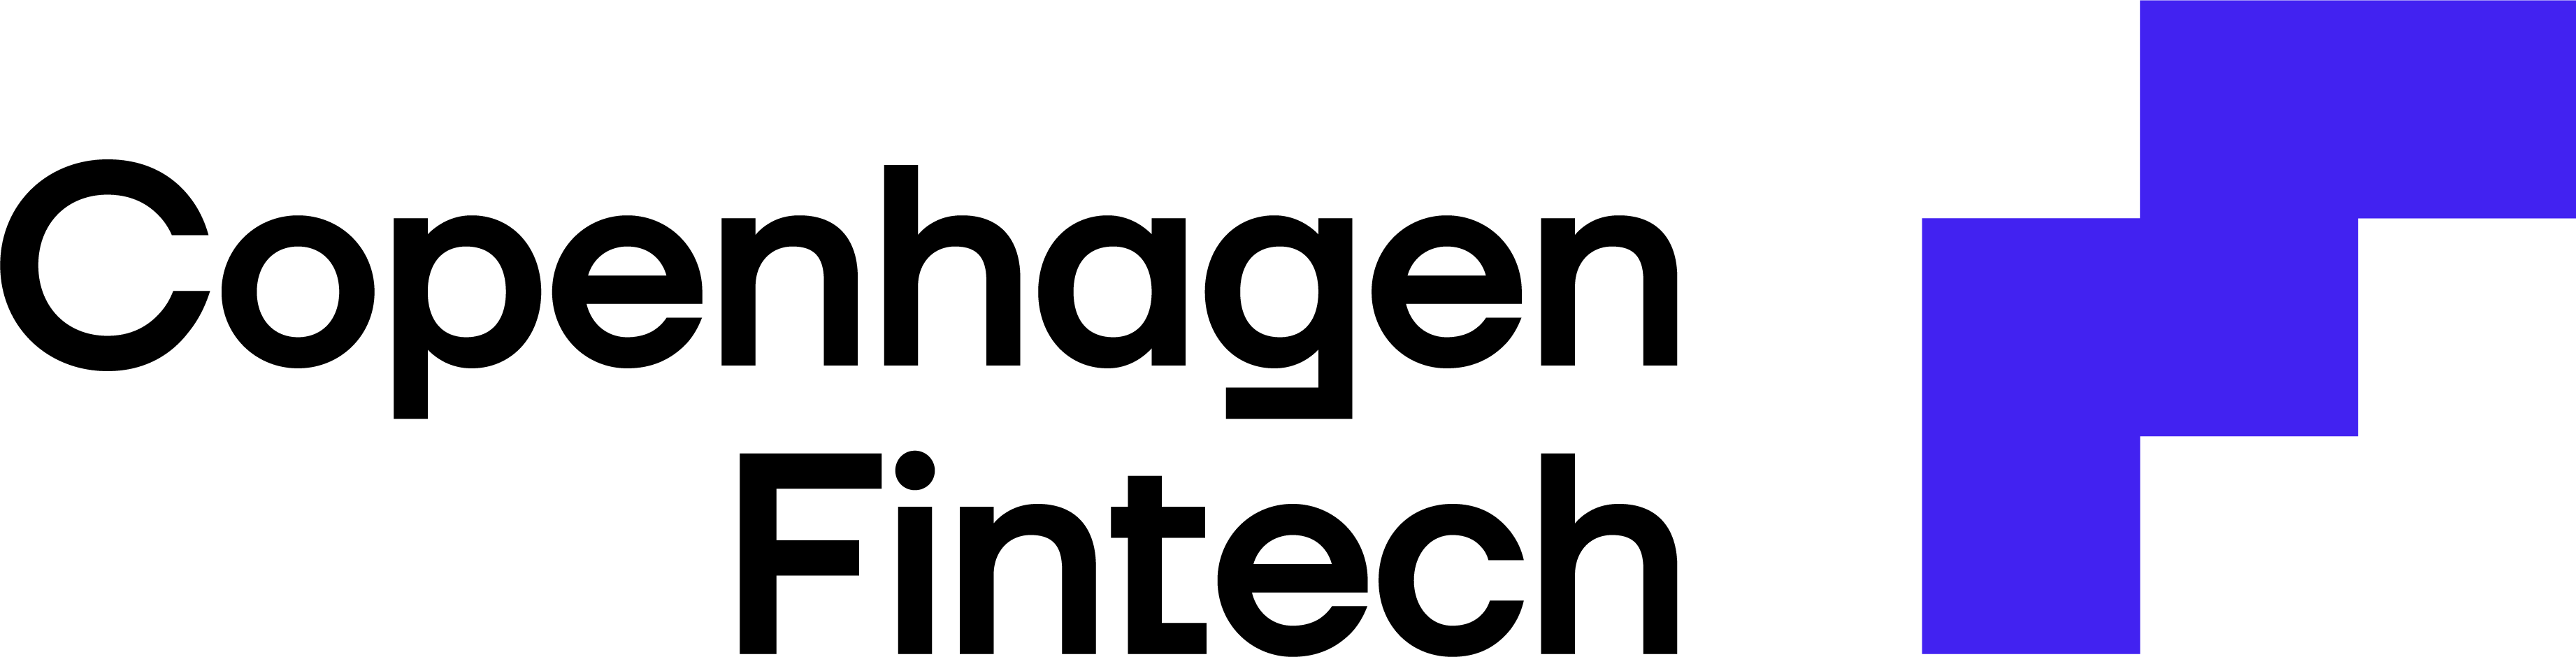 Copenhagen_Fintech_Logo_RGB